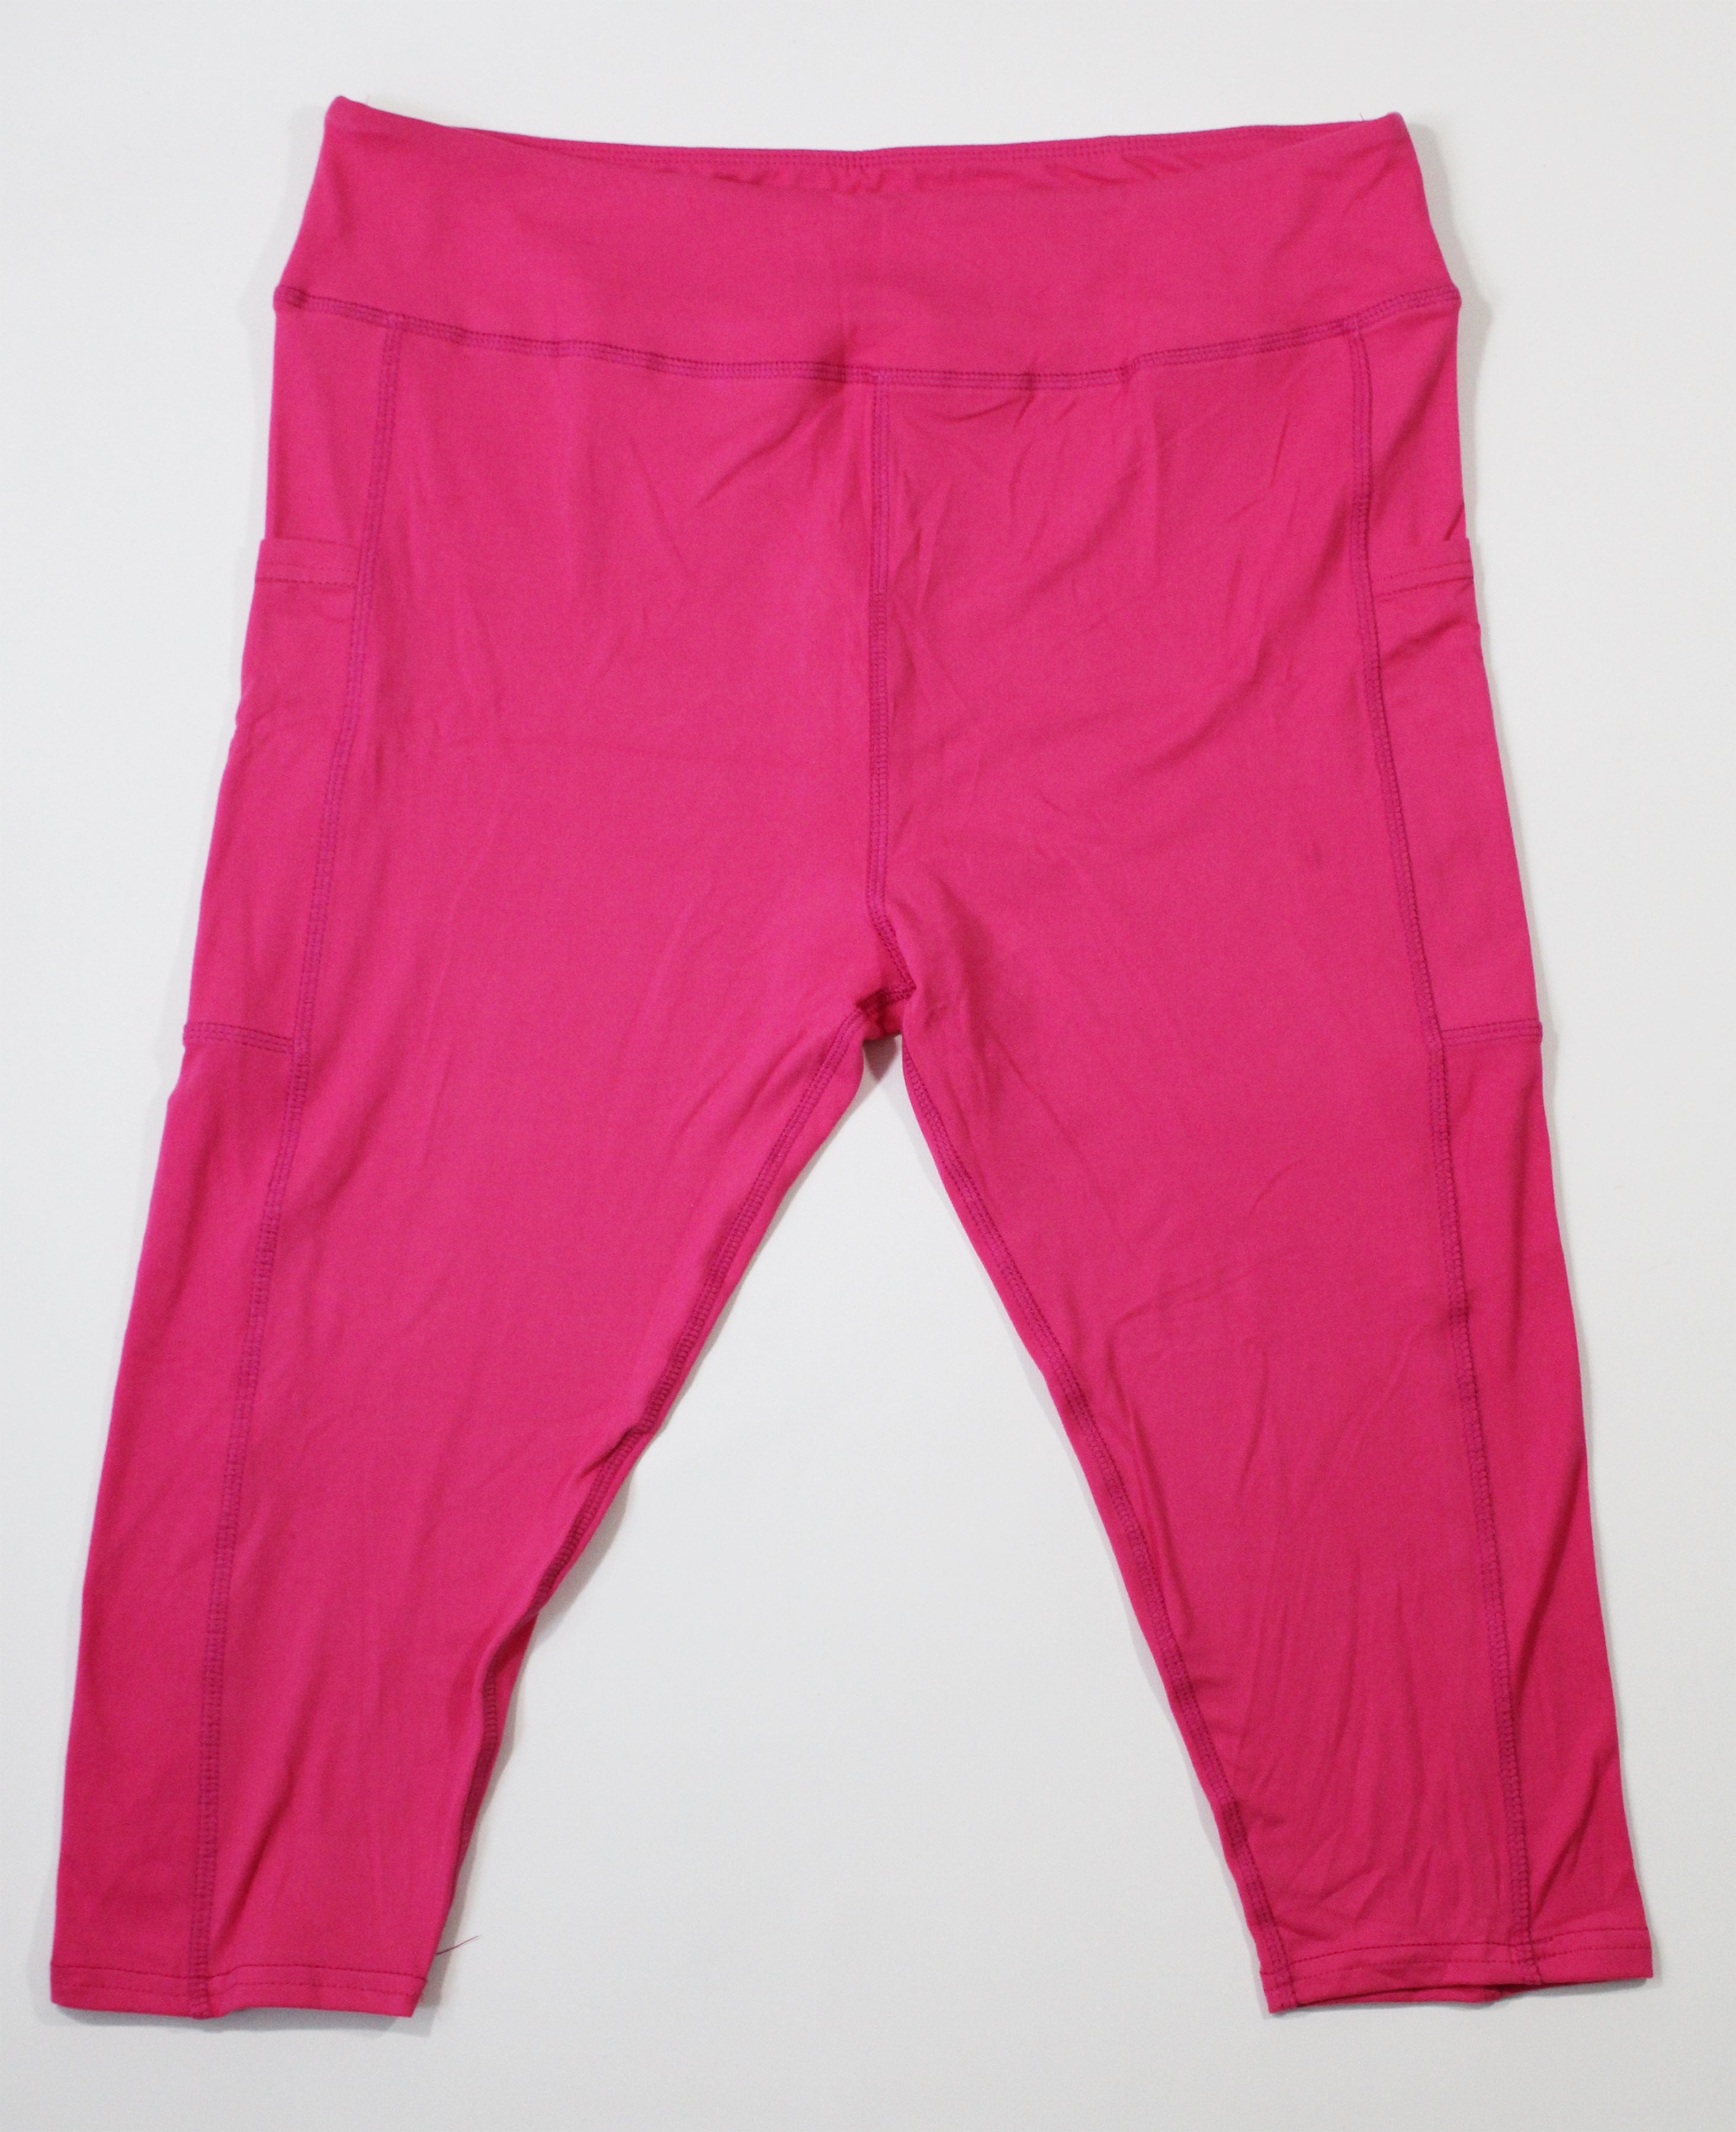 Magic Pocket Solid Legging - Hot Pink Capri